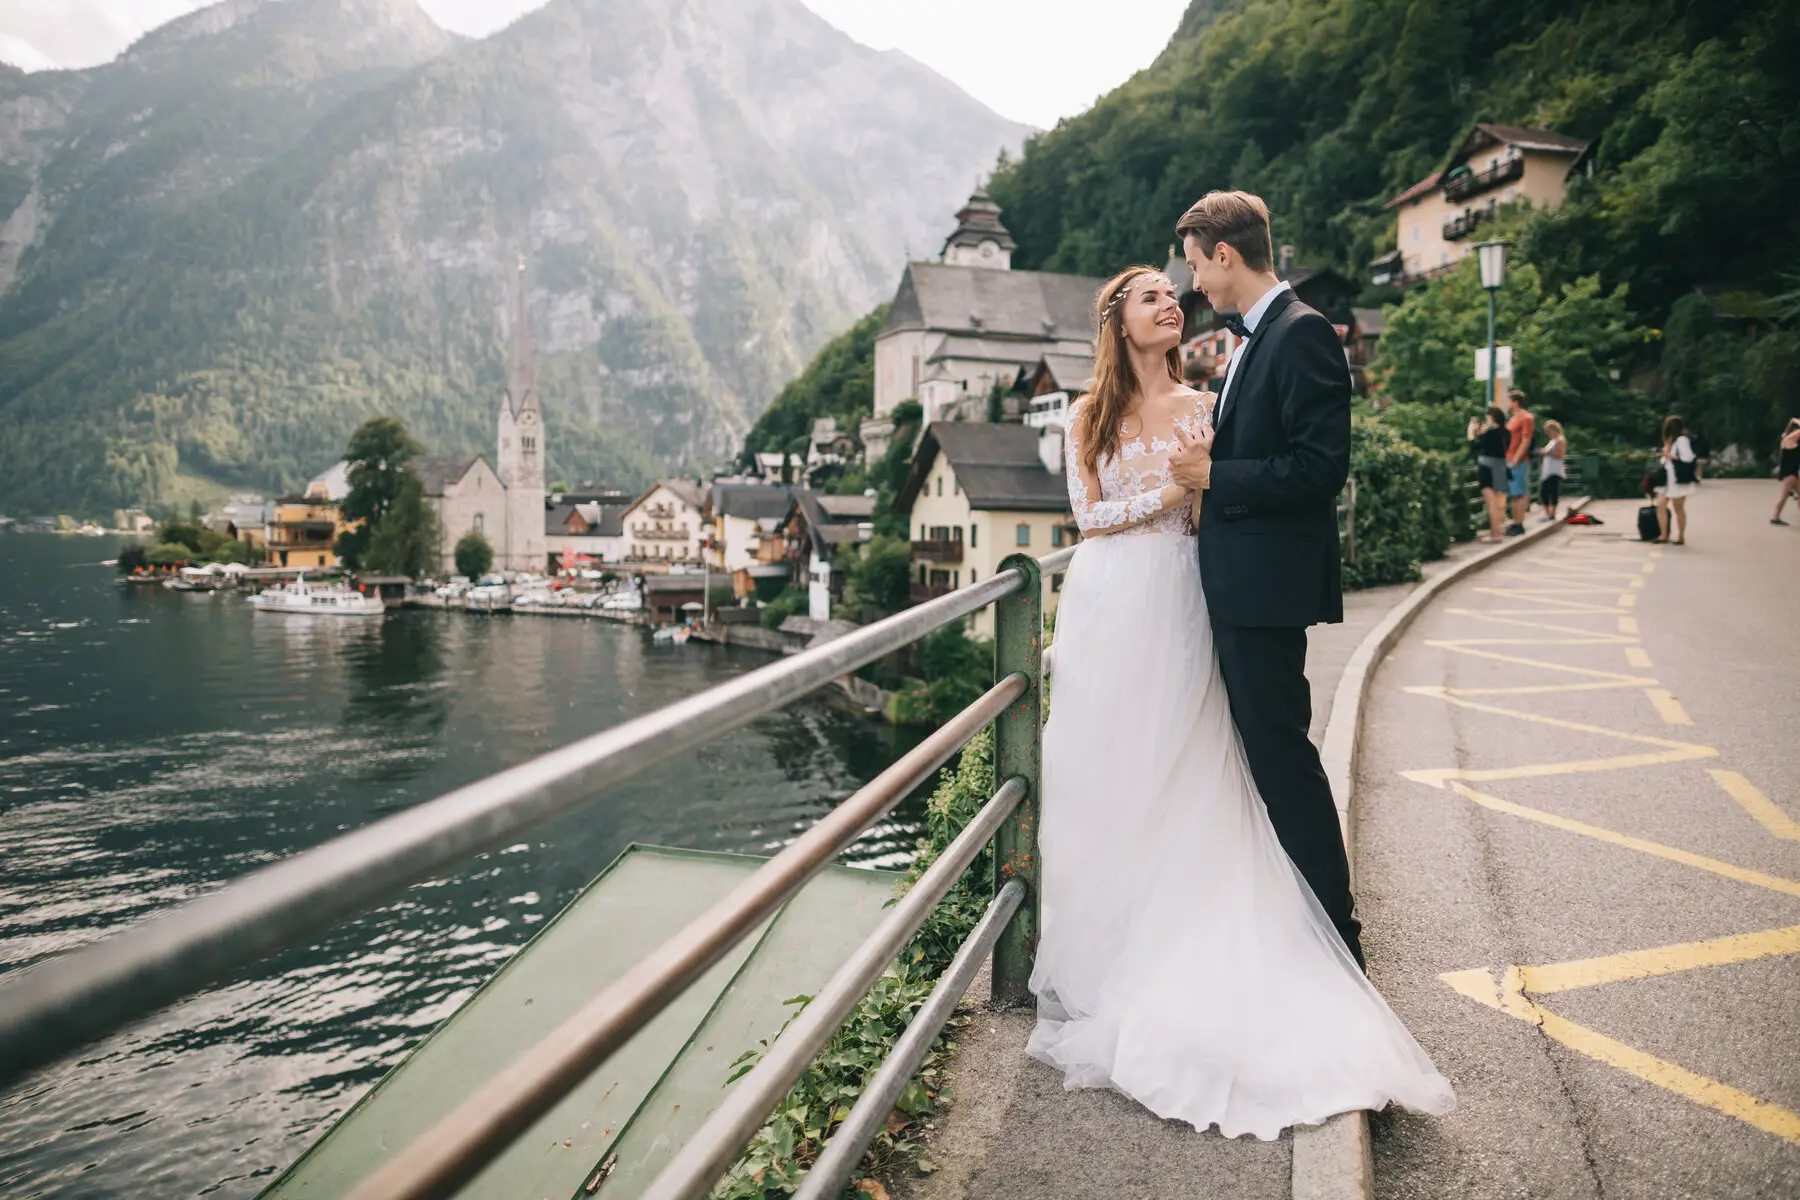 Couple getting married in Austria in Hallstatt